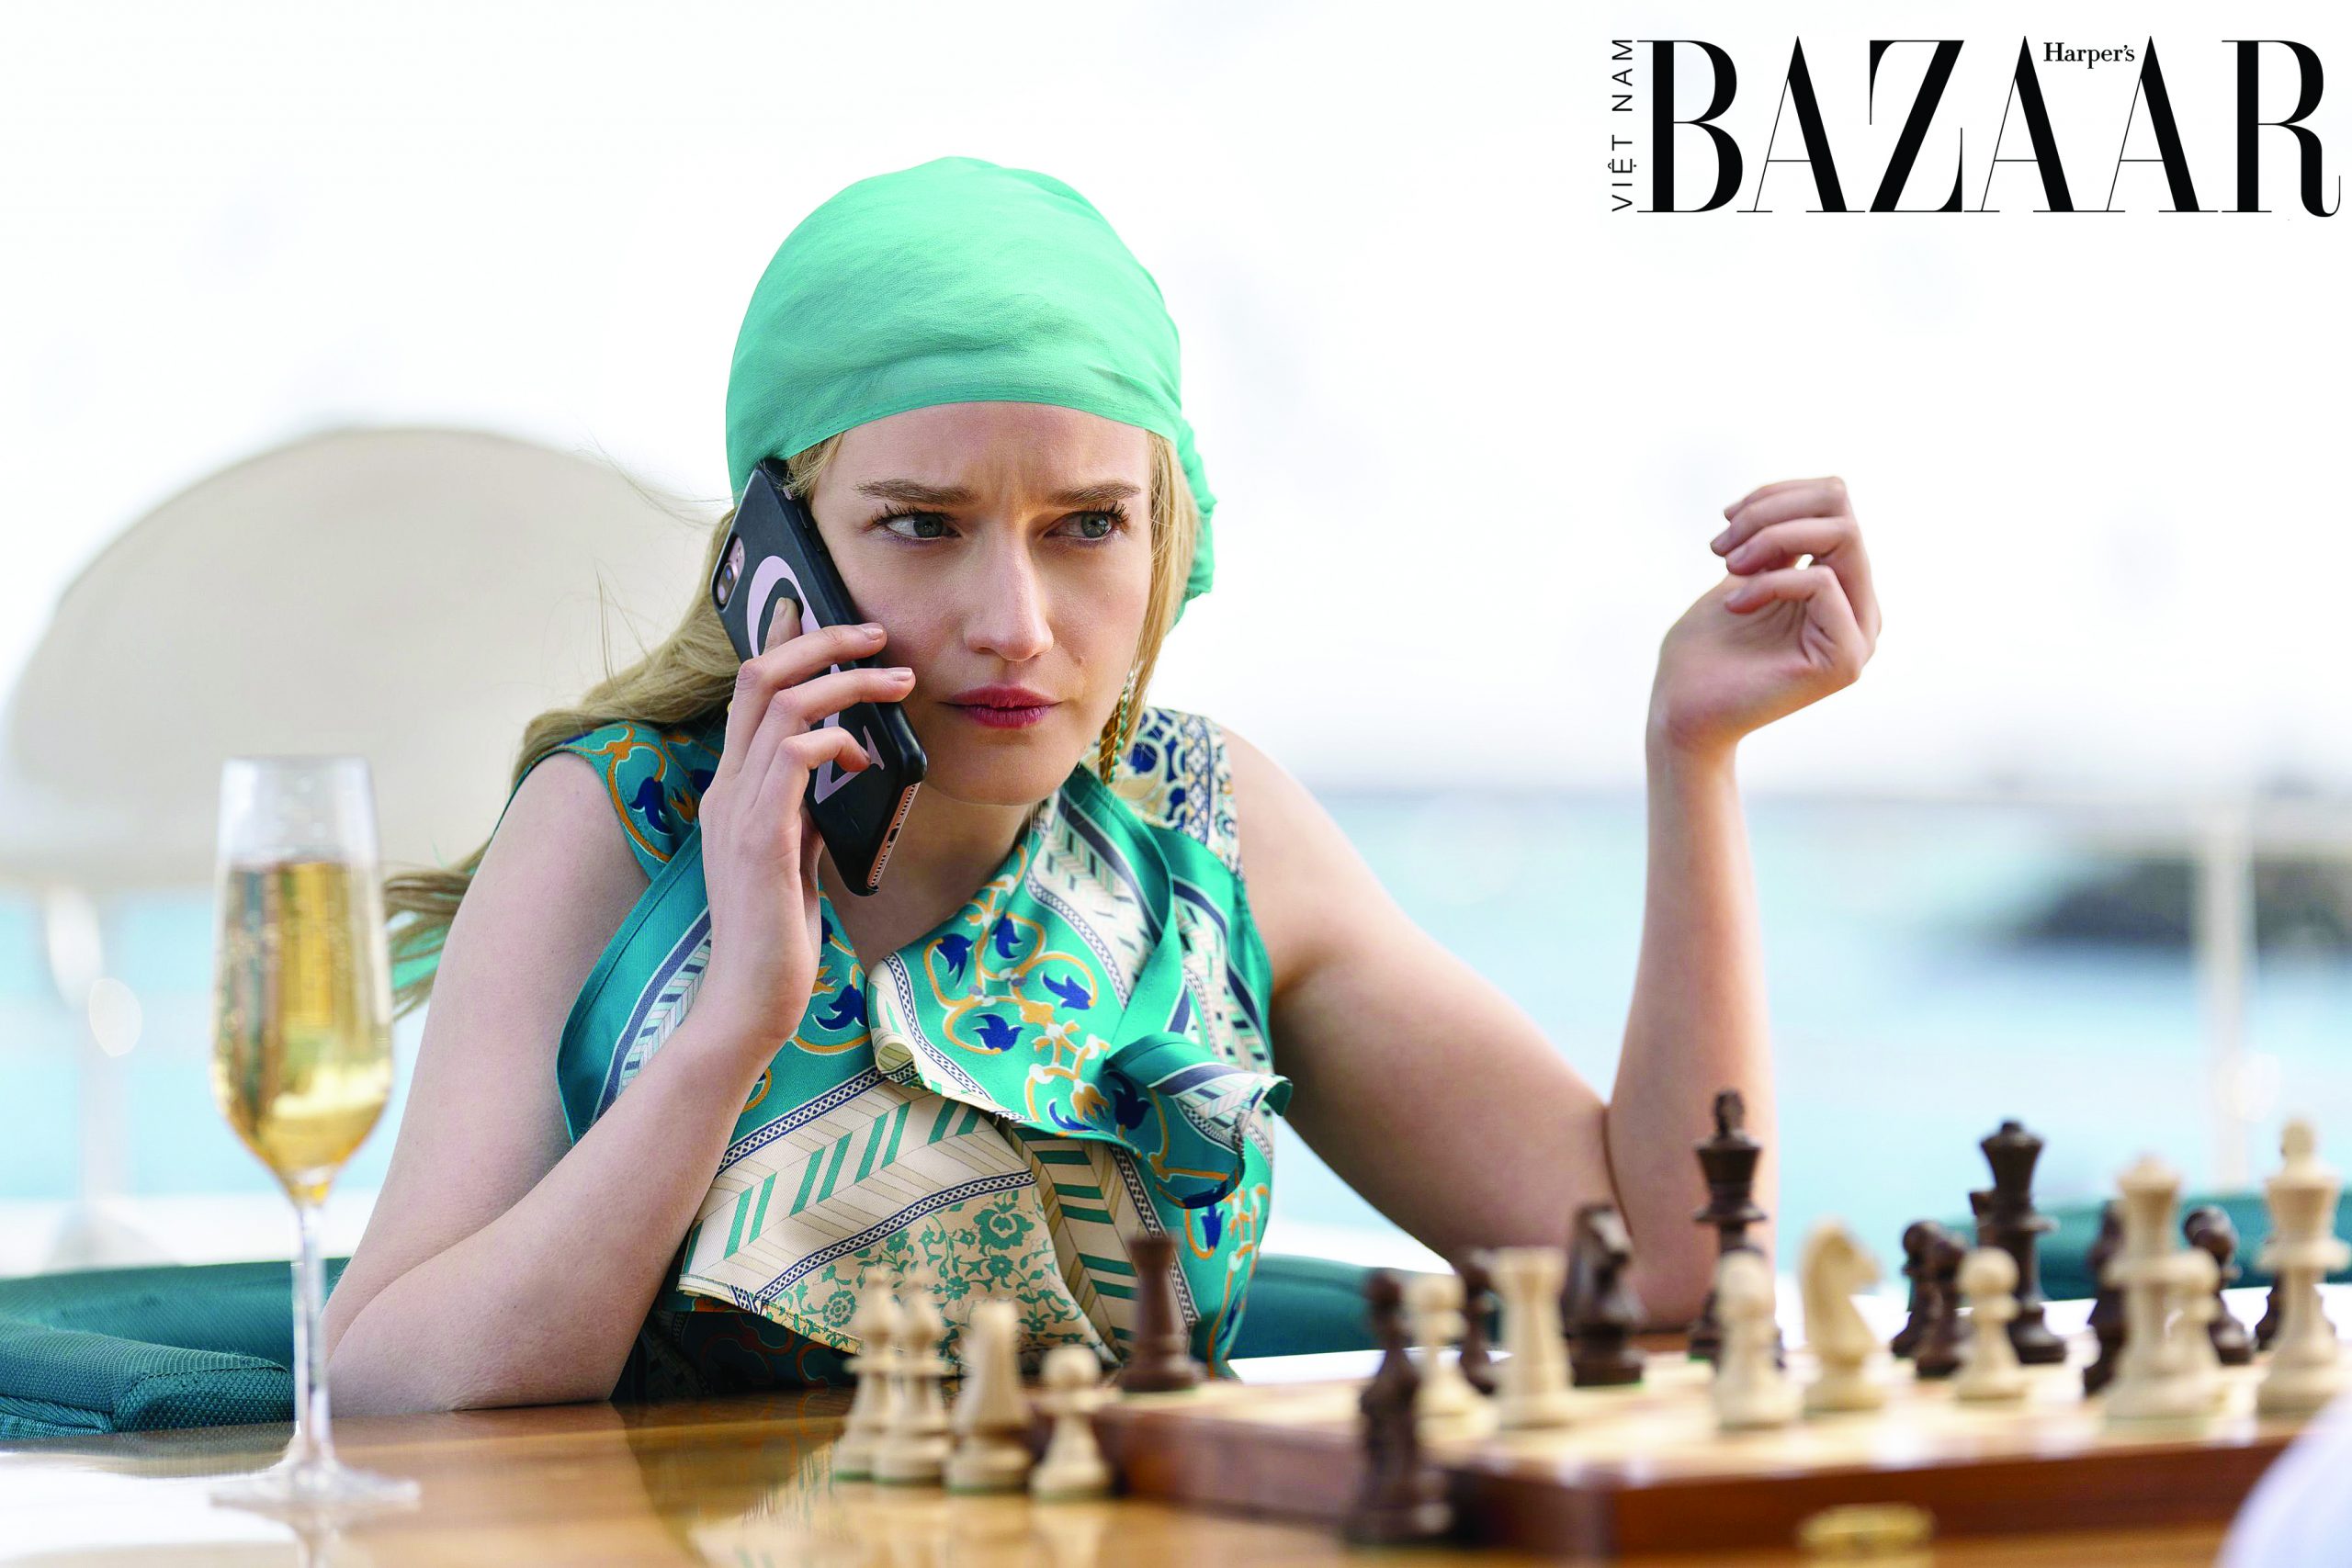 Harper's Bazaar_Phim Inventing Anna của Netflix_05